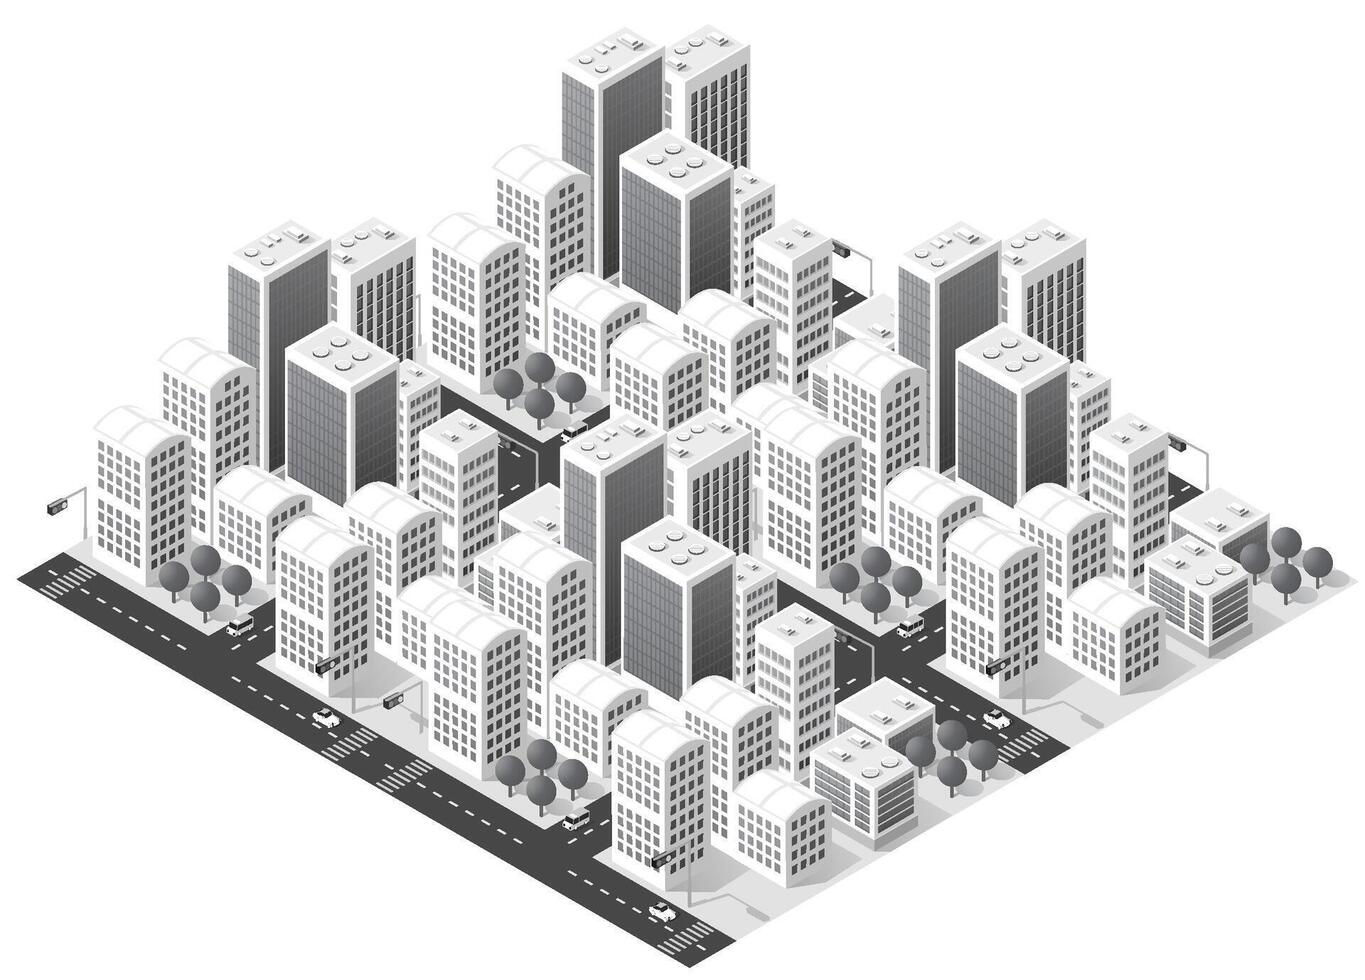 isometrisk 3d illustration av stadsdelen med hus vektor